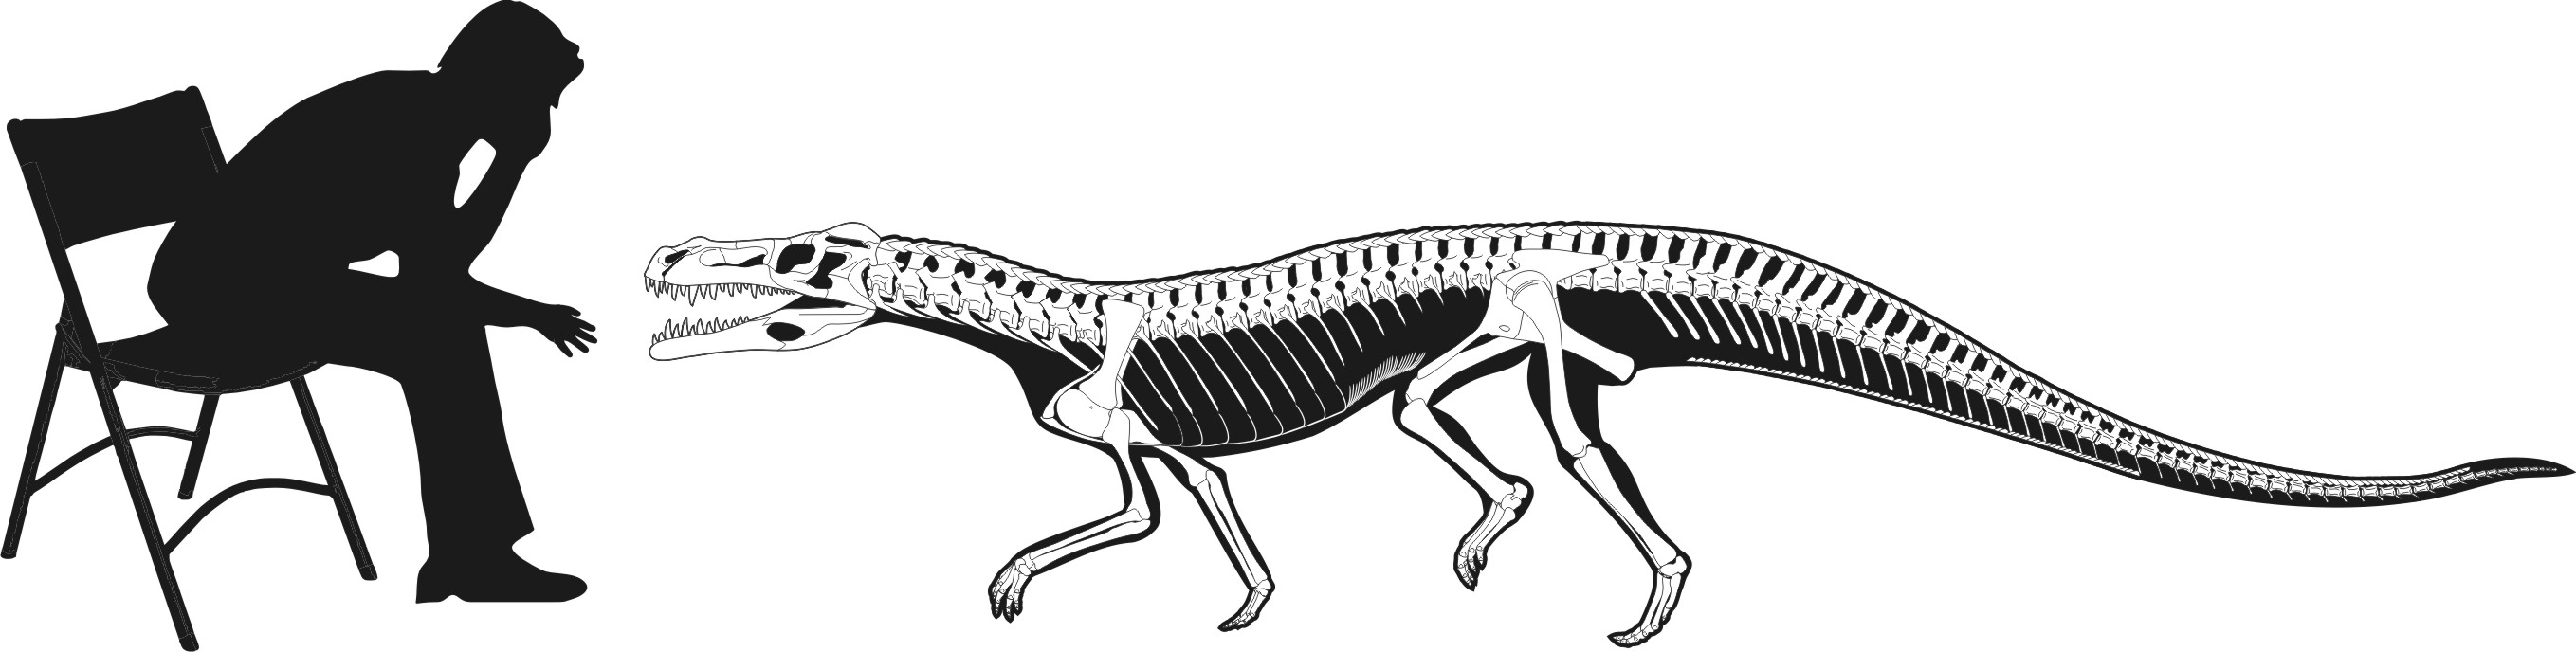 Decuriasuchus2.jpg